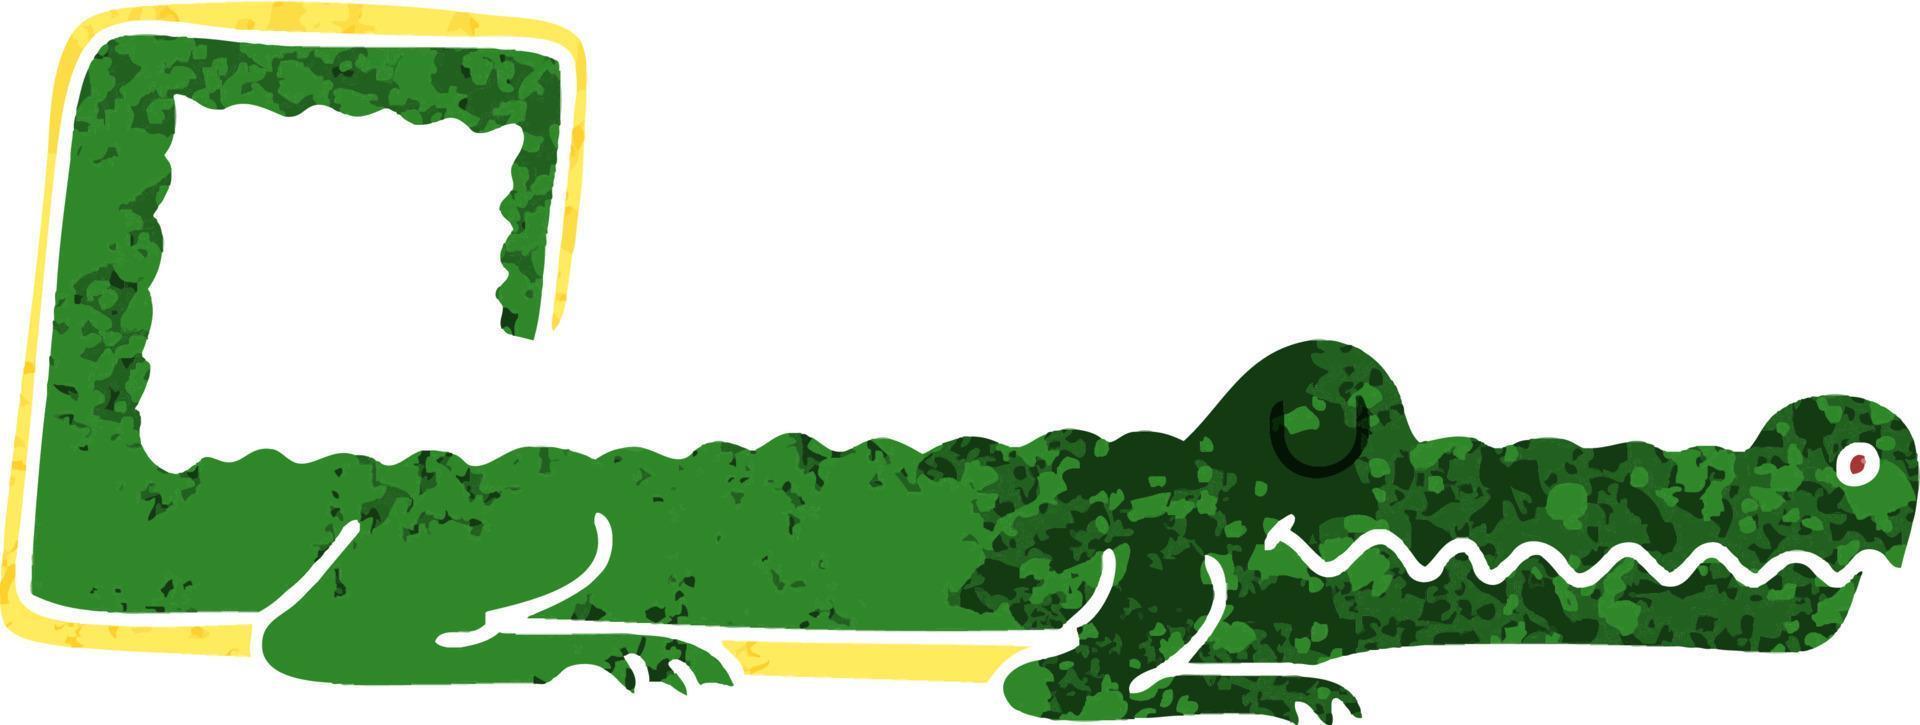 crocodile de dessin animé de style rétro excentrique vecteur